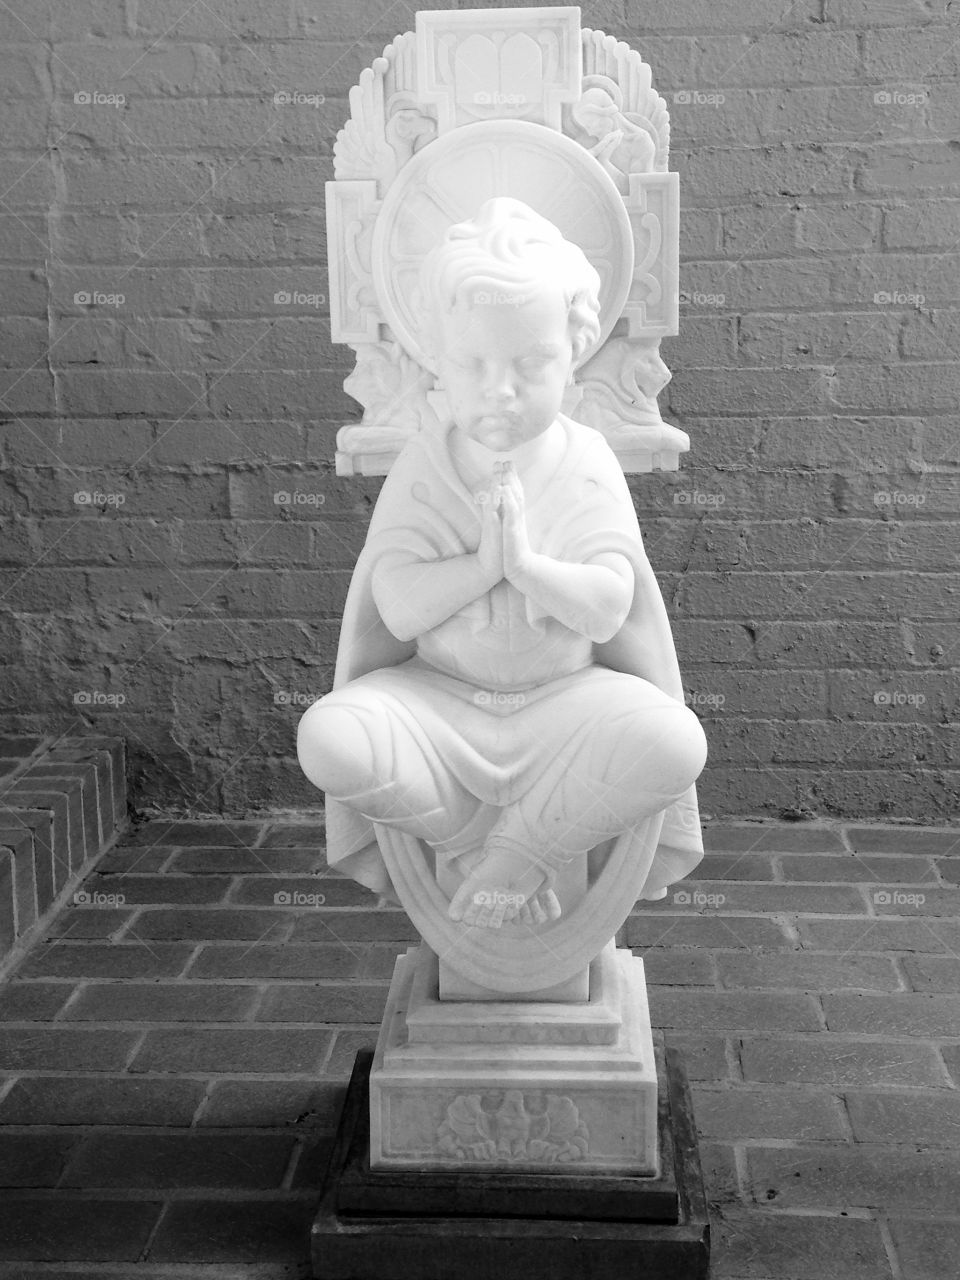 Baby Jesus sculpture